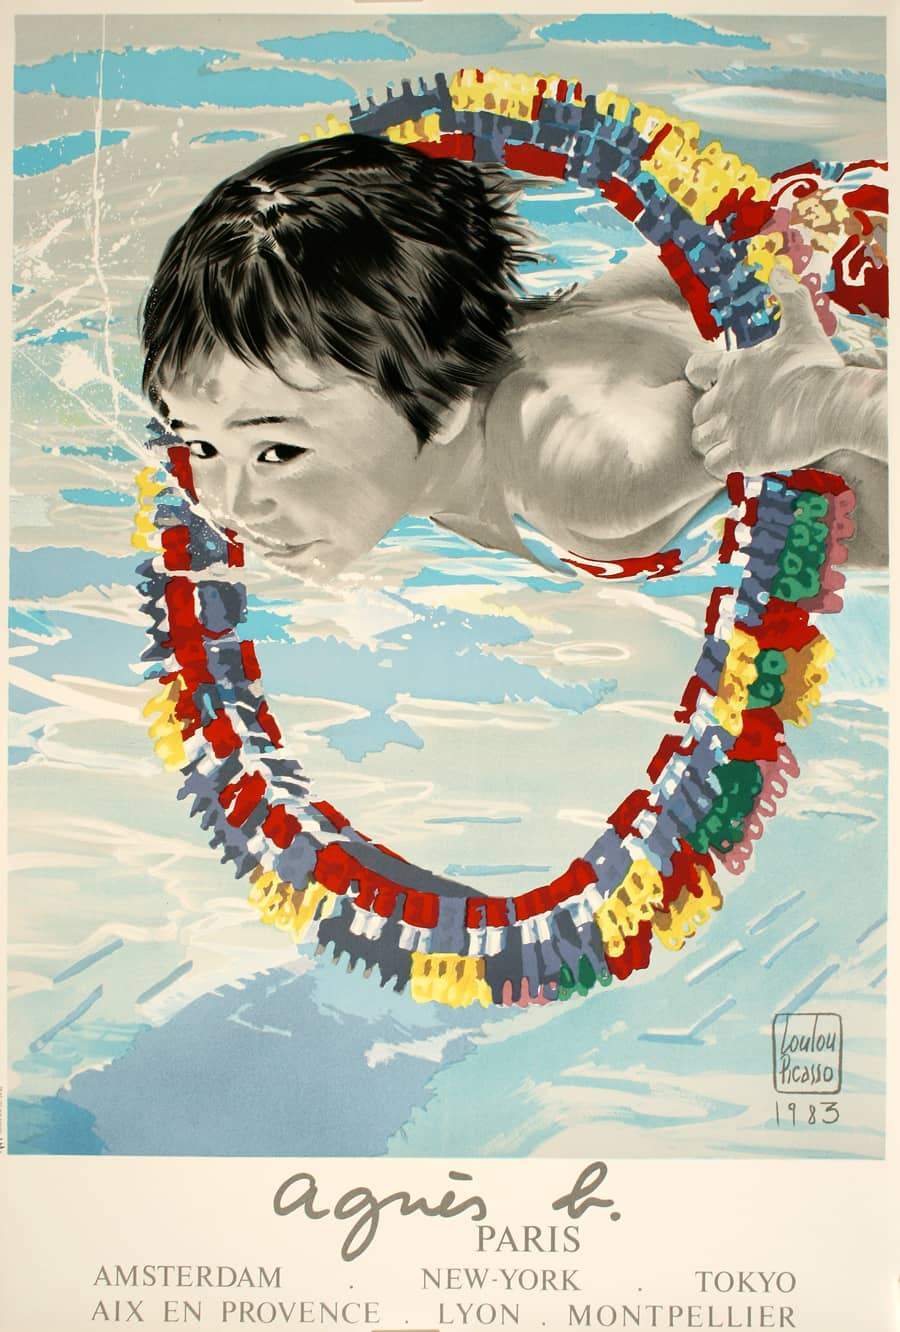 Original Agnes B. 1985 Poster by Loulou Picasso